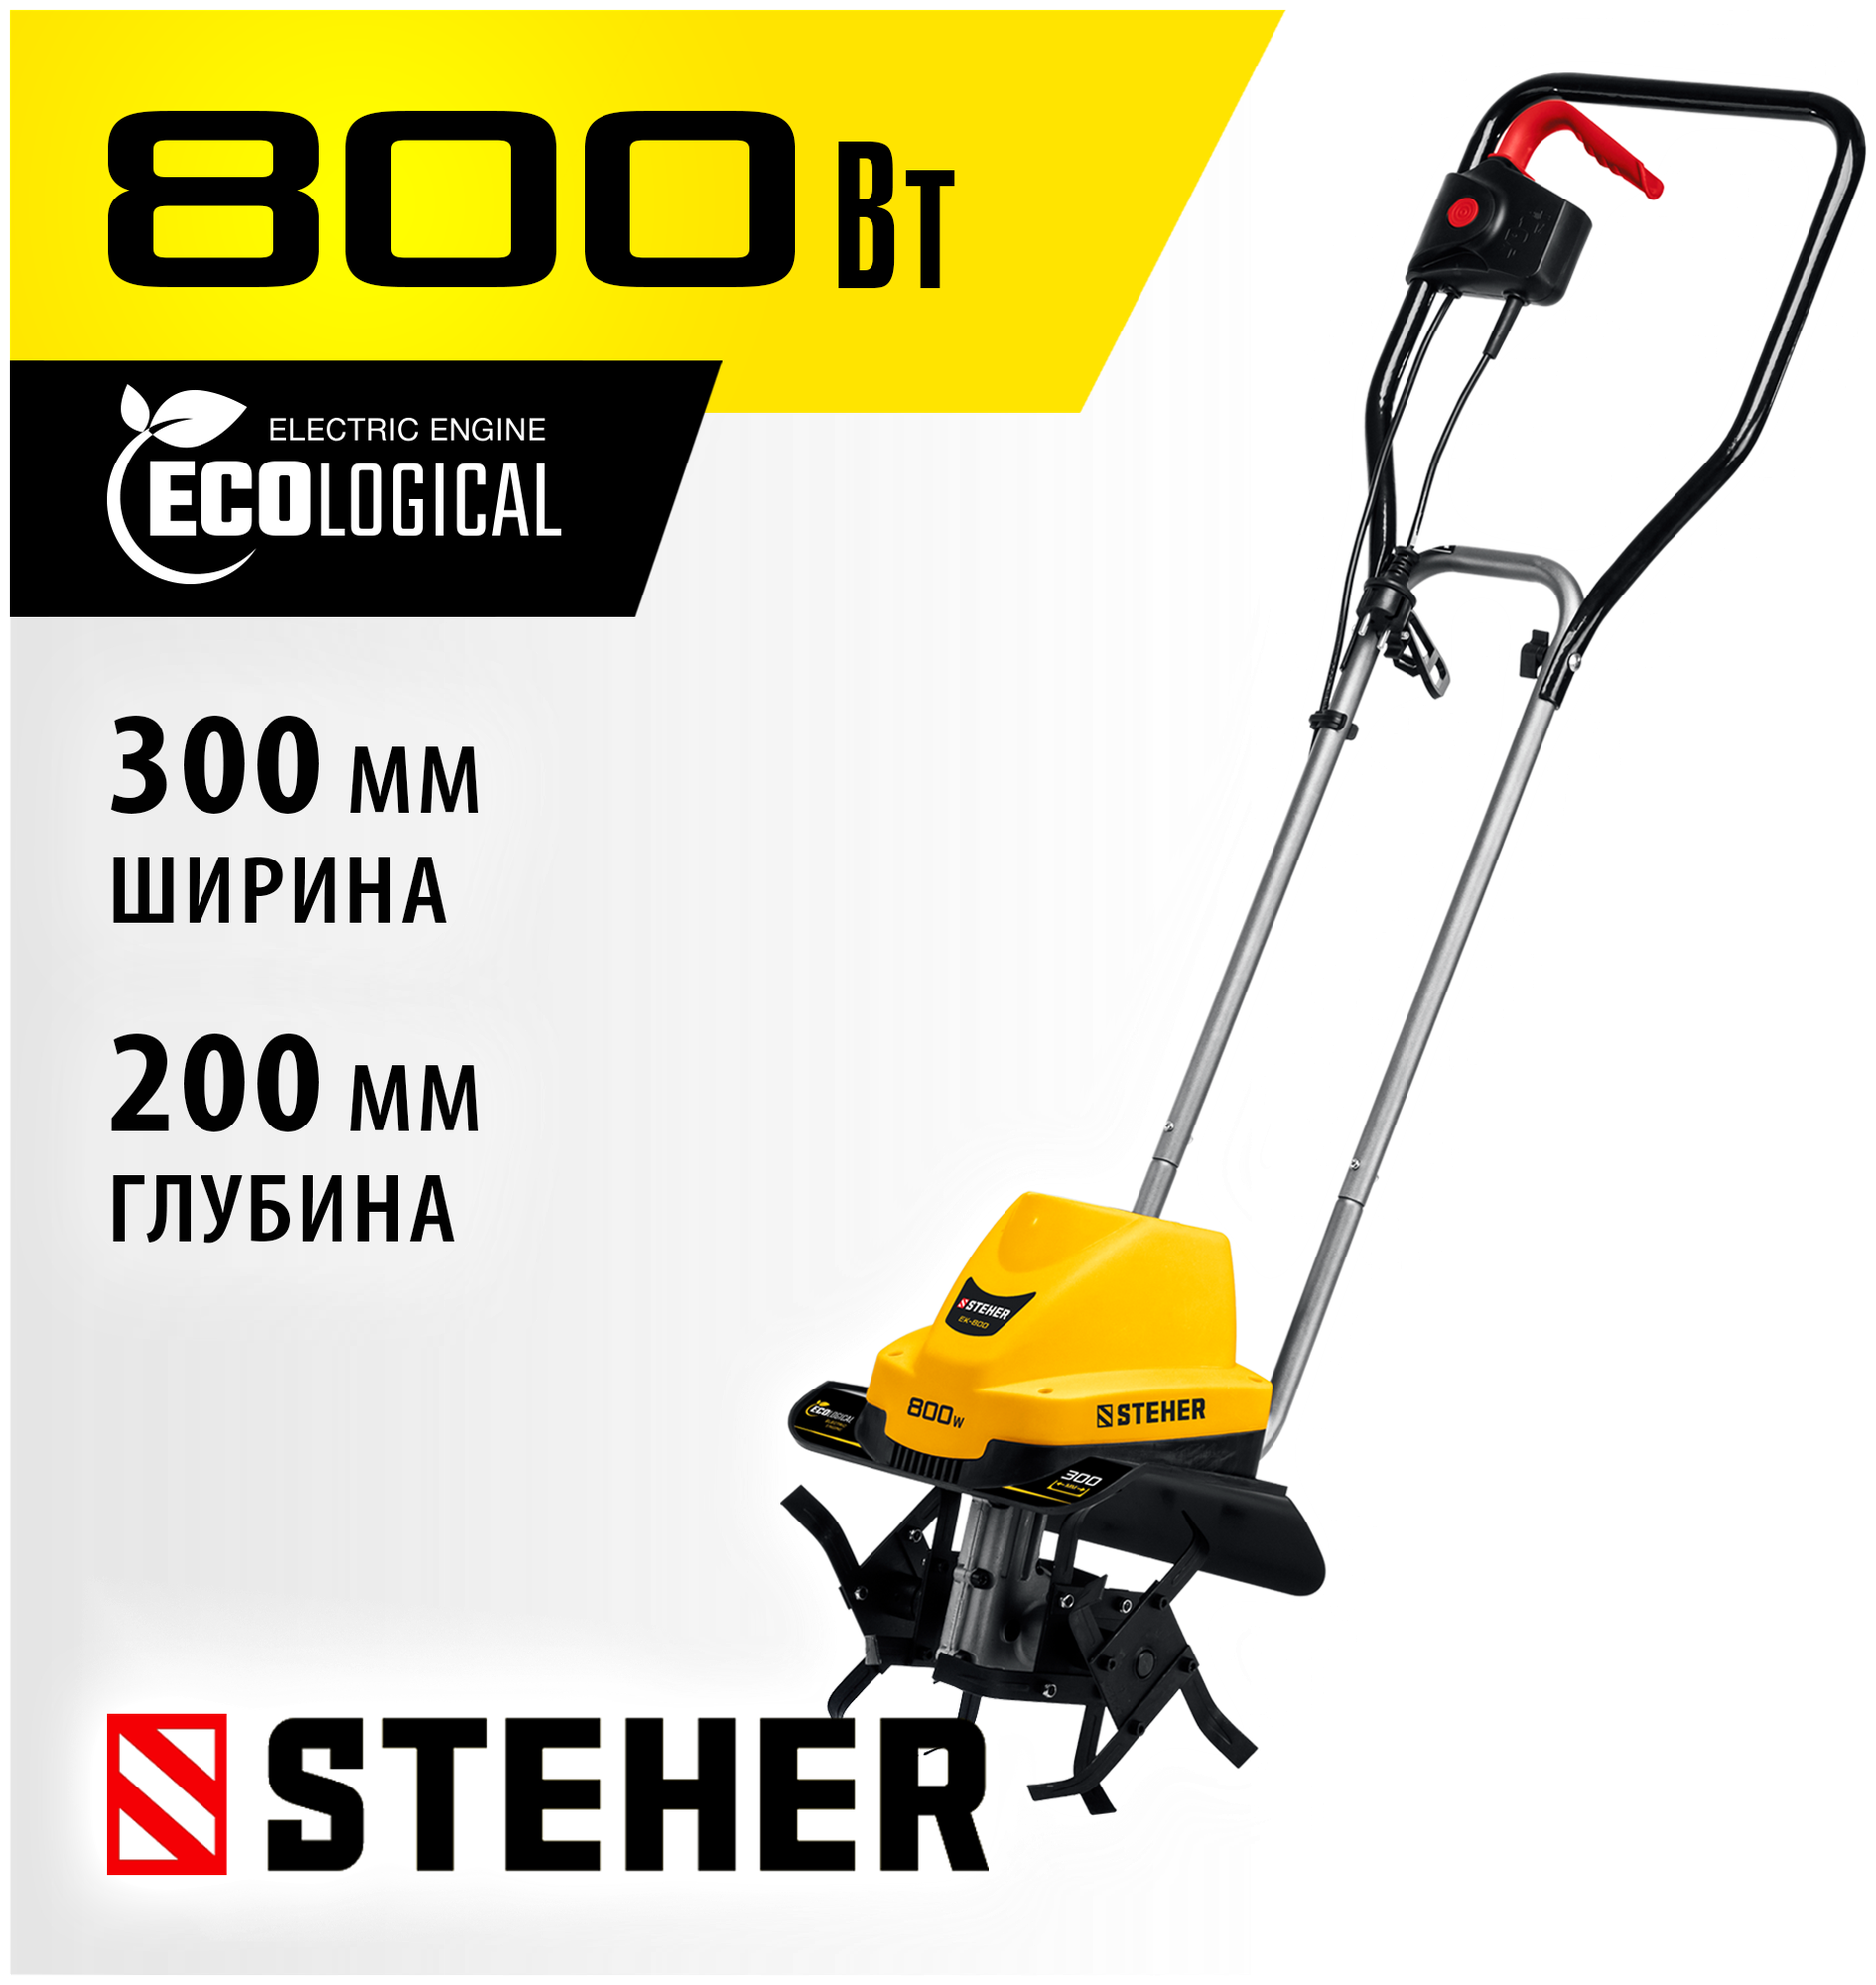 STEHER 800 Вт, 300 мм ширина обработки, 1 скорость, культиватор электрический EK-800